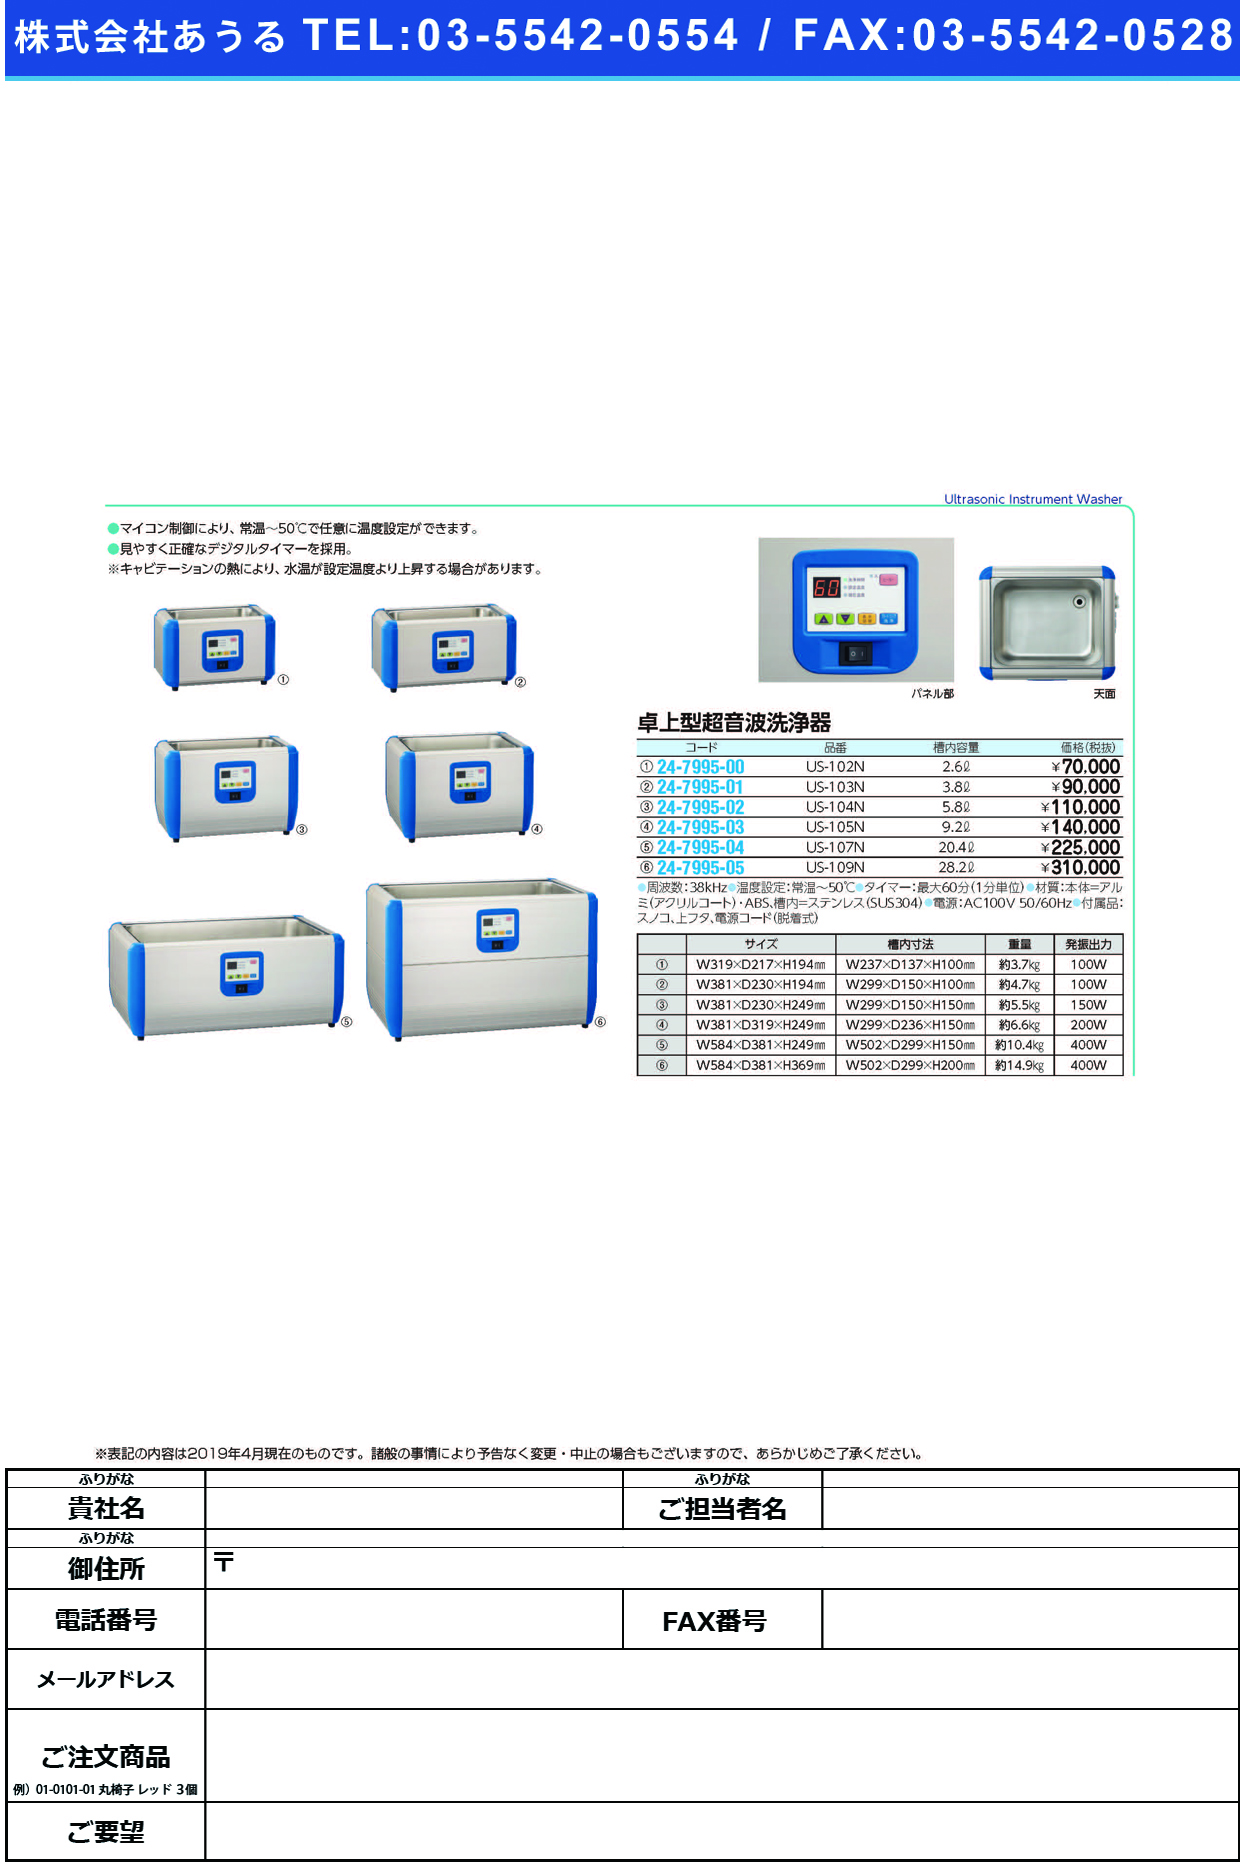 (24-7995-04)卓上型超音波洗浄器US-107N ﾀｸｼﾞｮｳｶﾞﾀﾁｮｳｵﾝﾊﾟｾﾝｼﾞ(三商)【1台単位】【2019年カタログ商品】